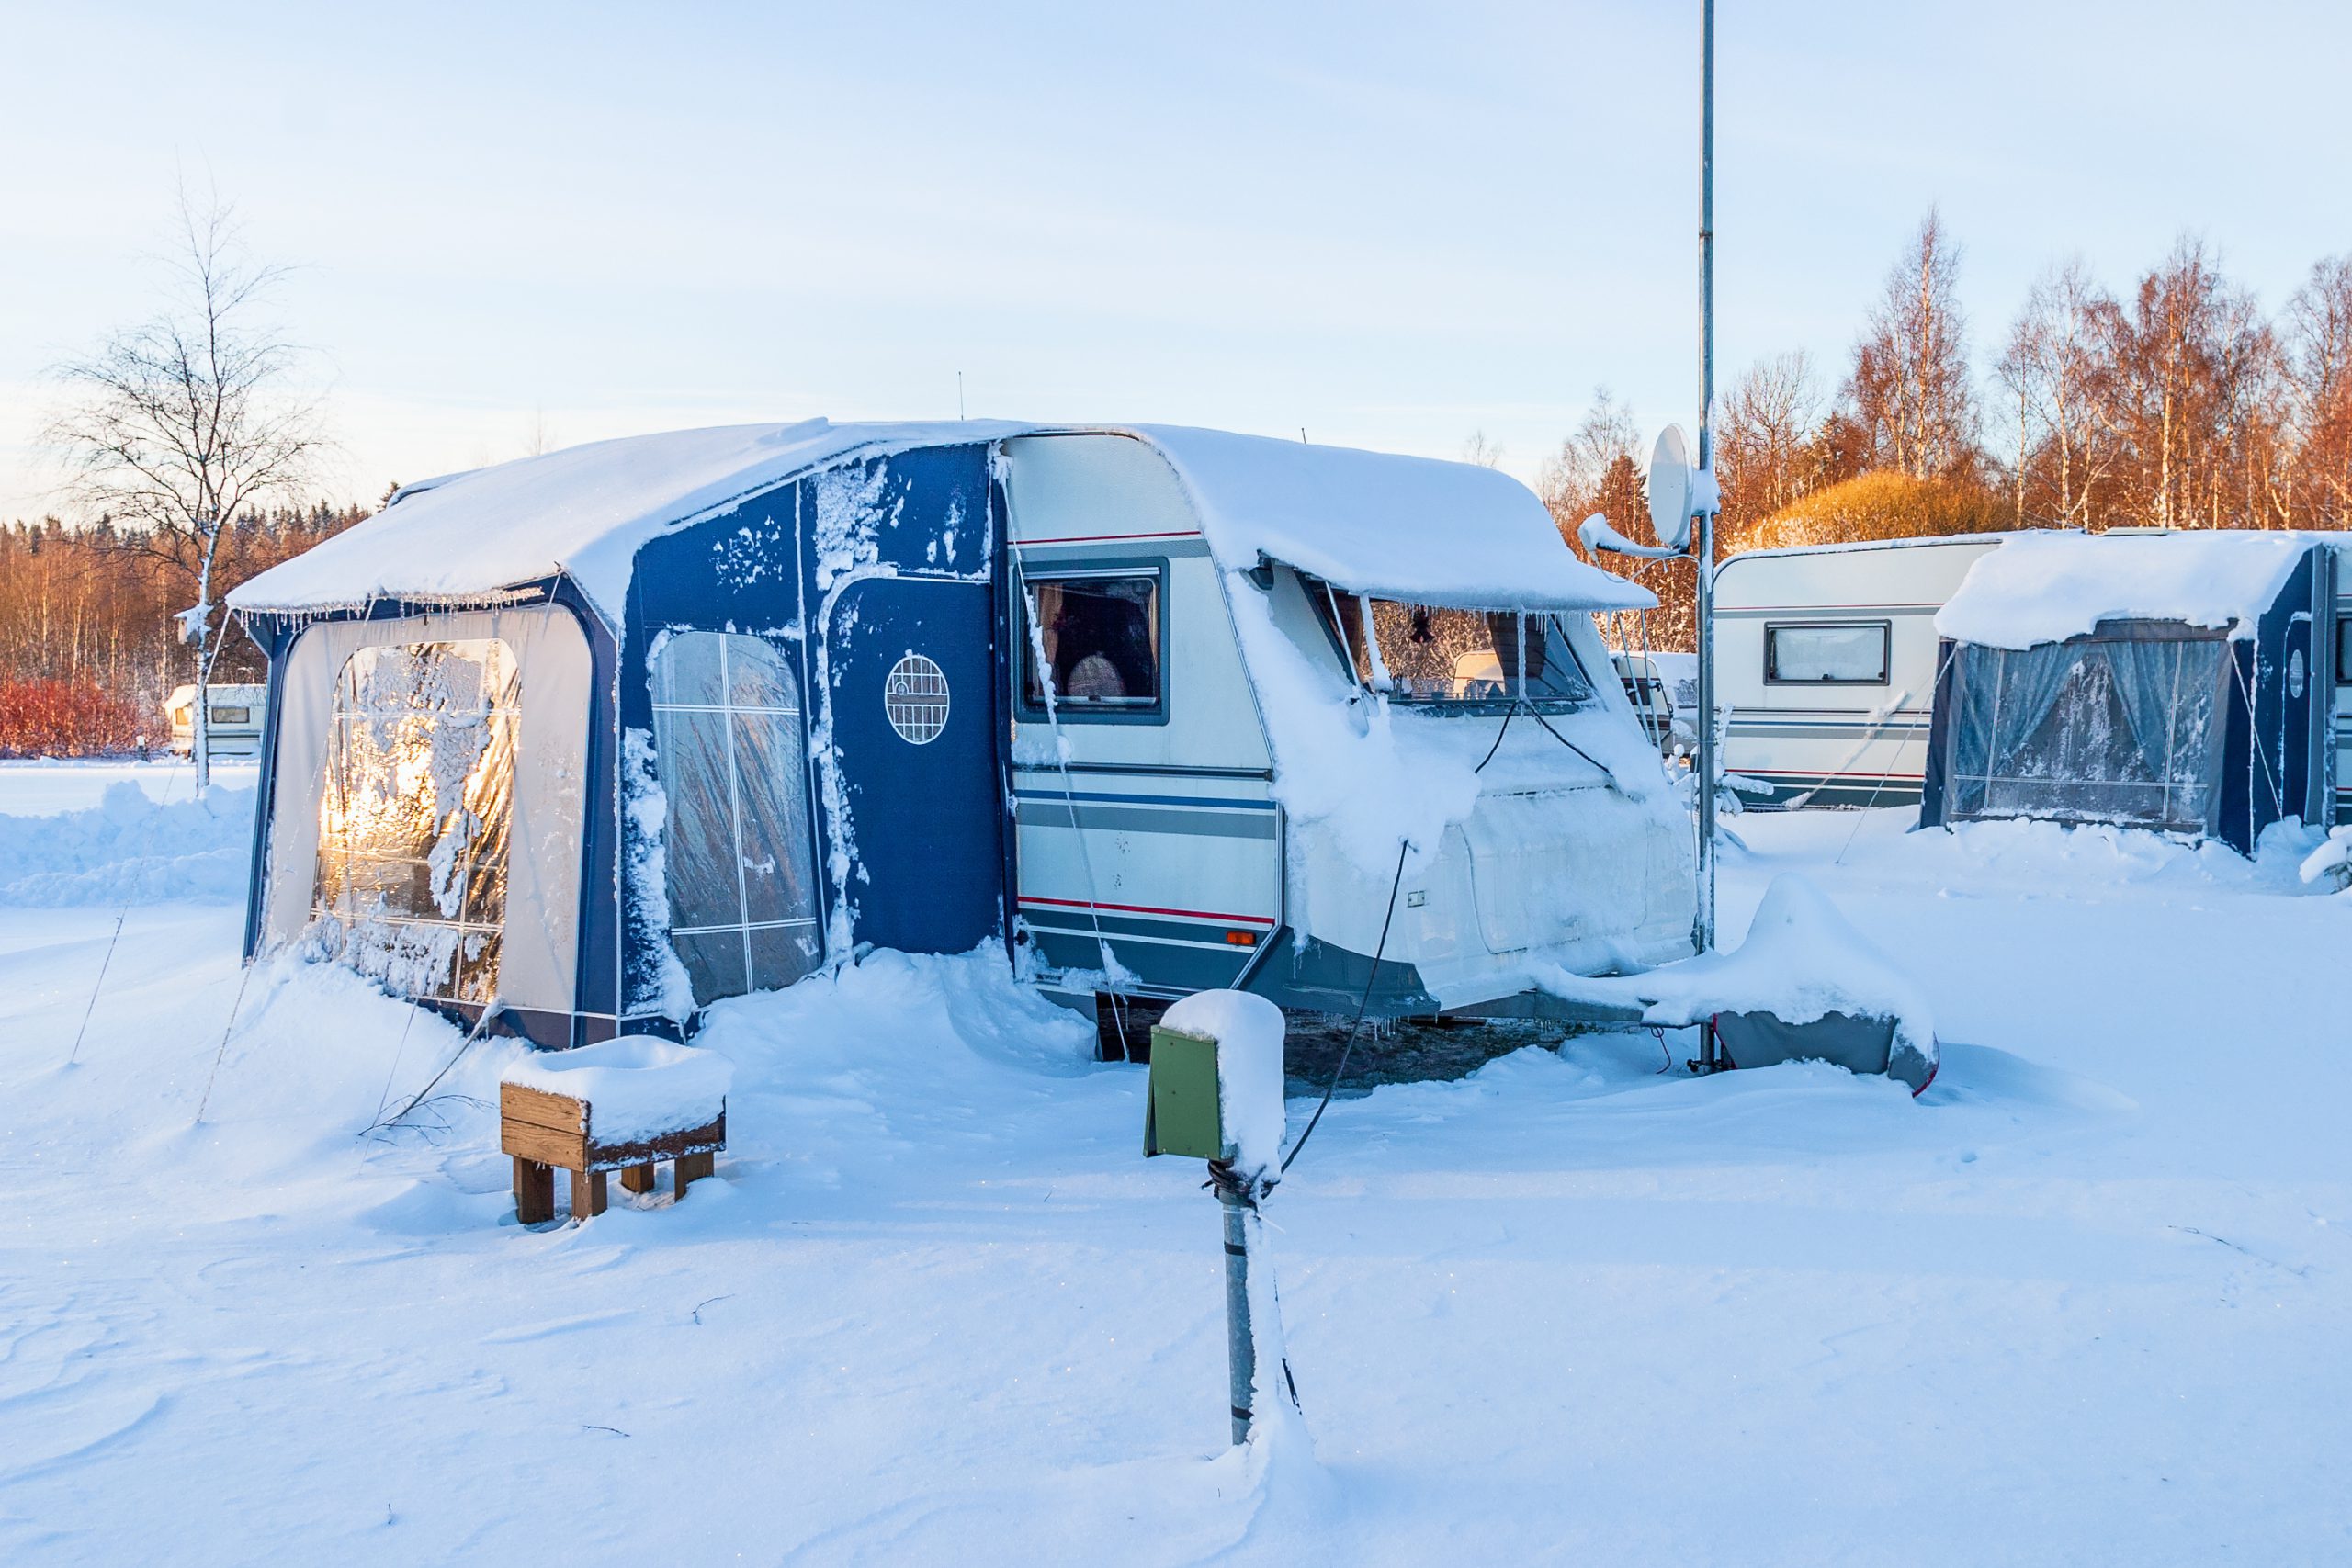 Camping de invierno con el Caravan Club: más beneficios de tu equipo de camping